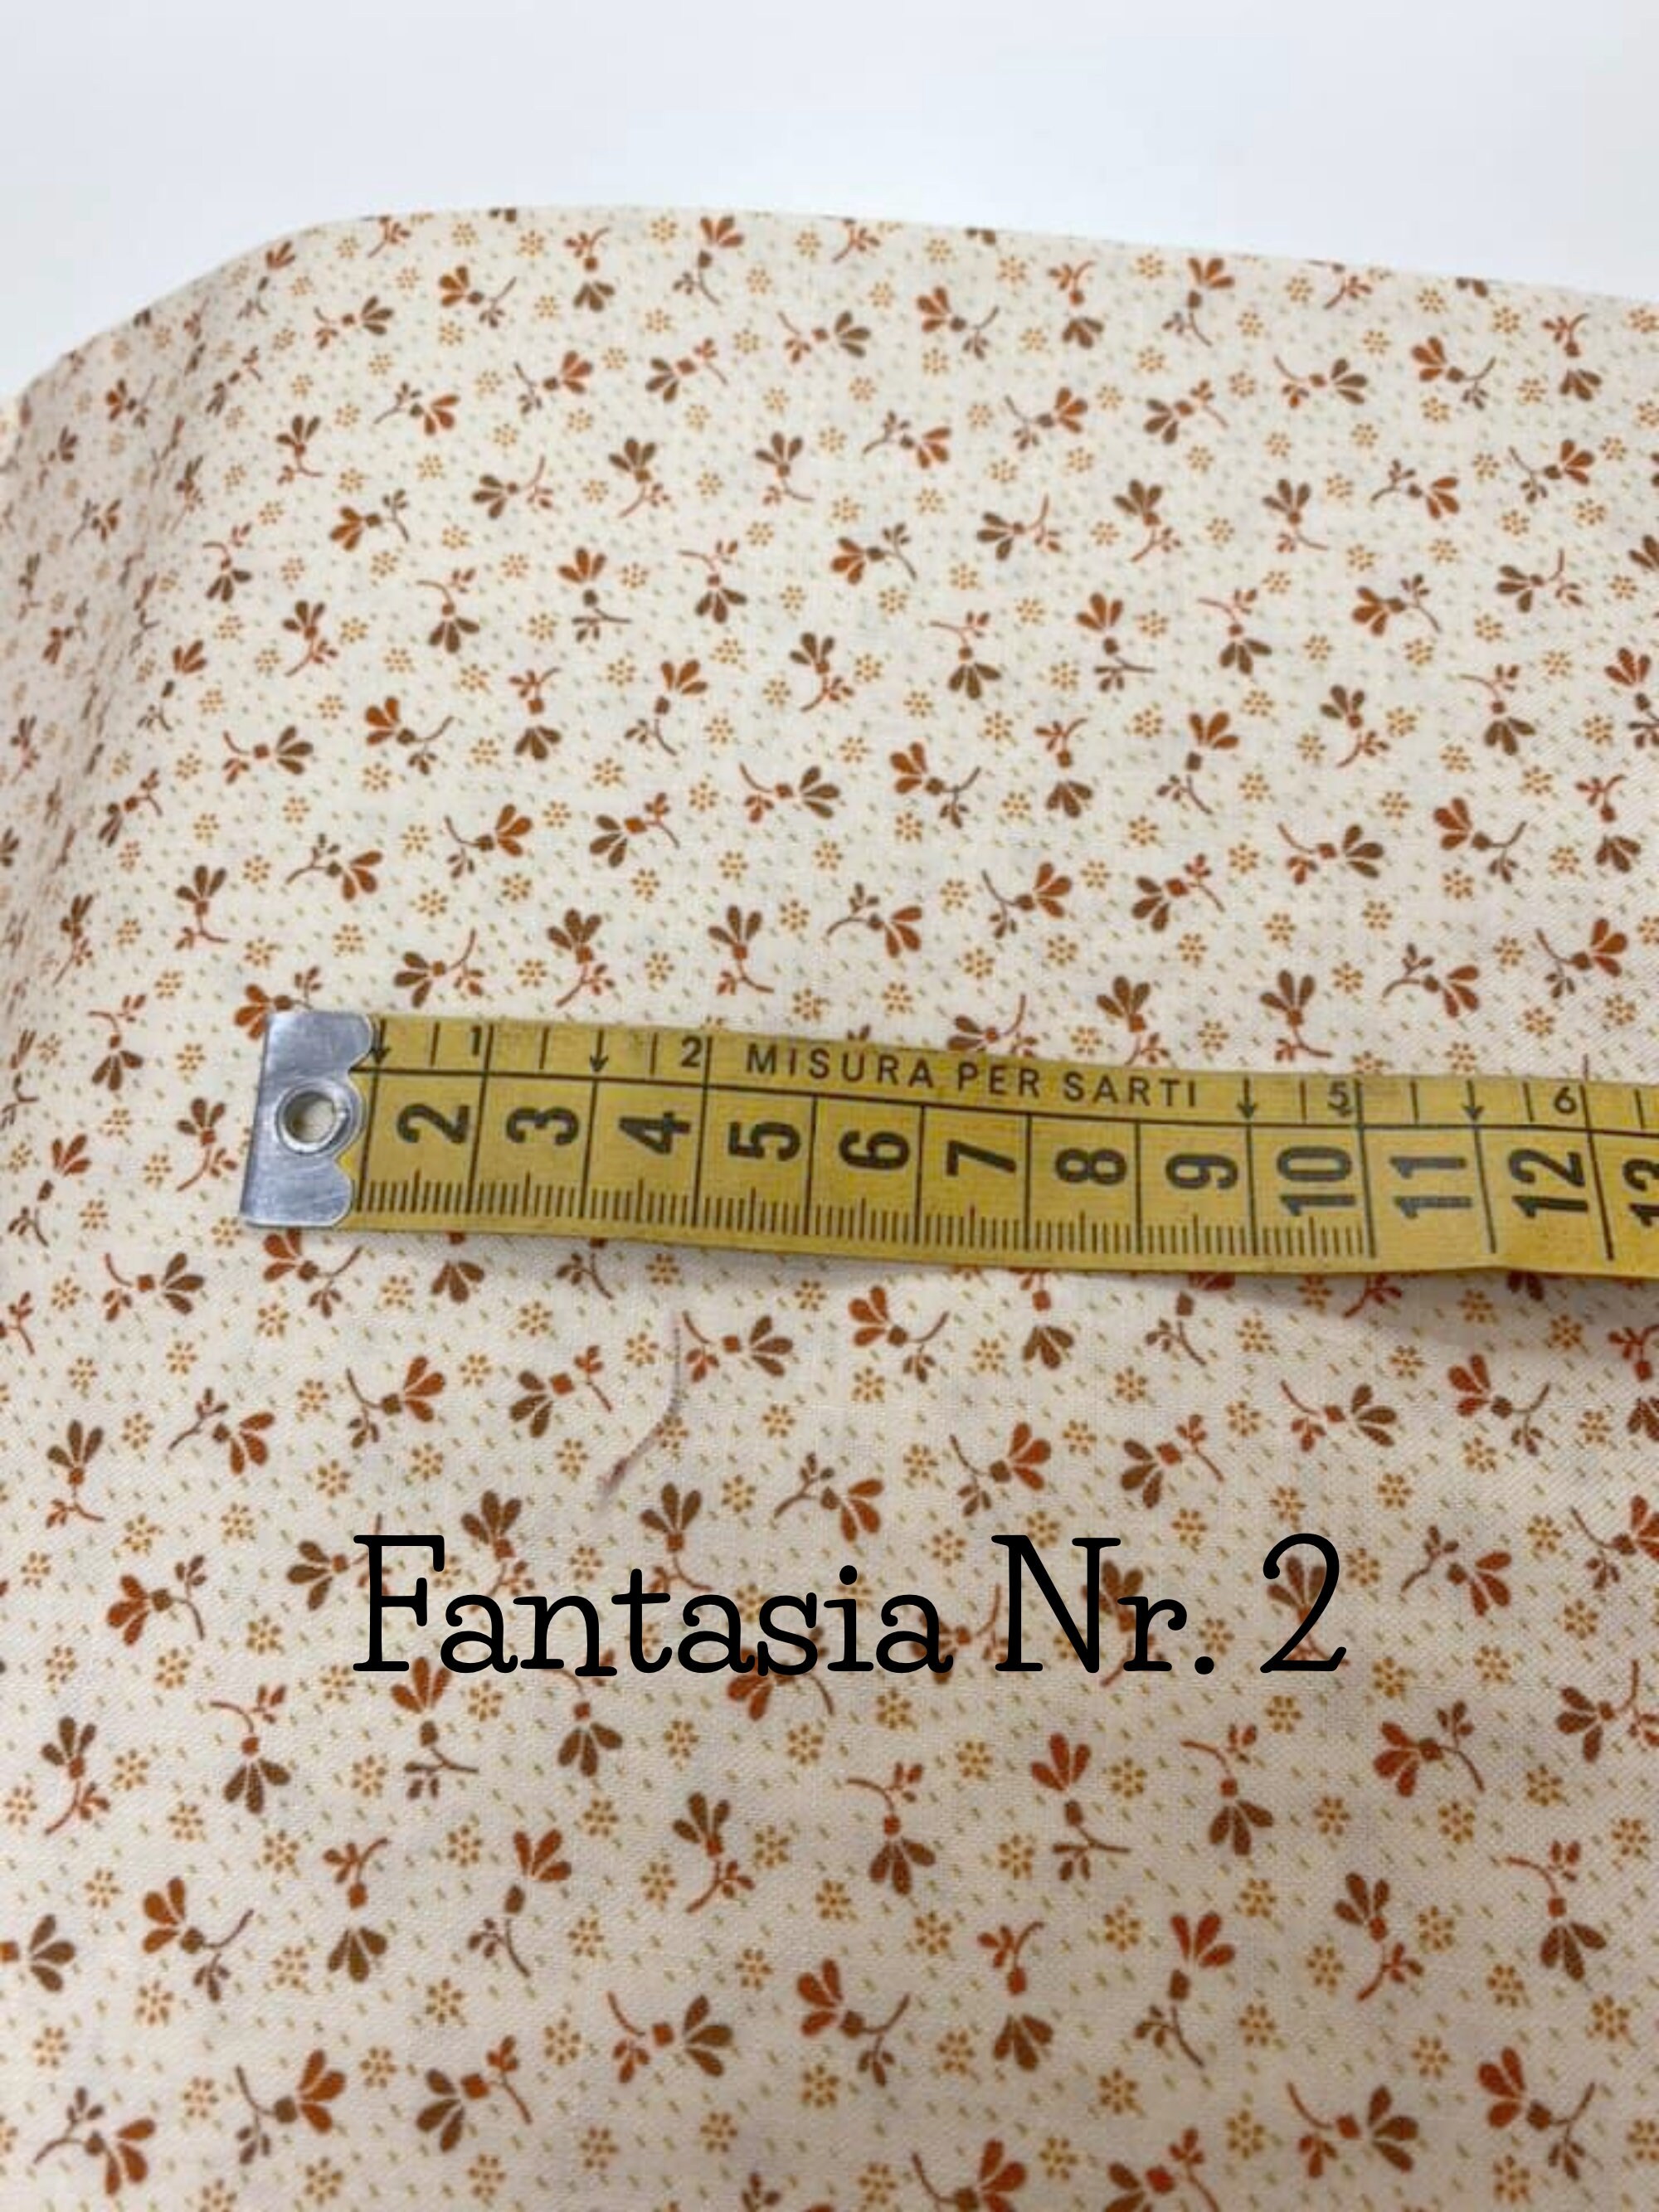 Pumpink Patch bis: Tessuto cotone americano, tagli da 20x110 cm, ideale per  realizzare zucche e altri progetti autunnali di cucito creativo